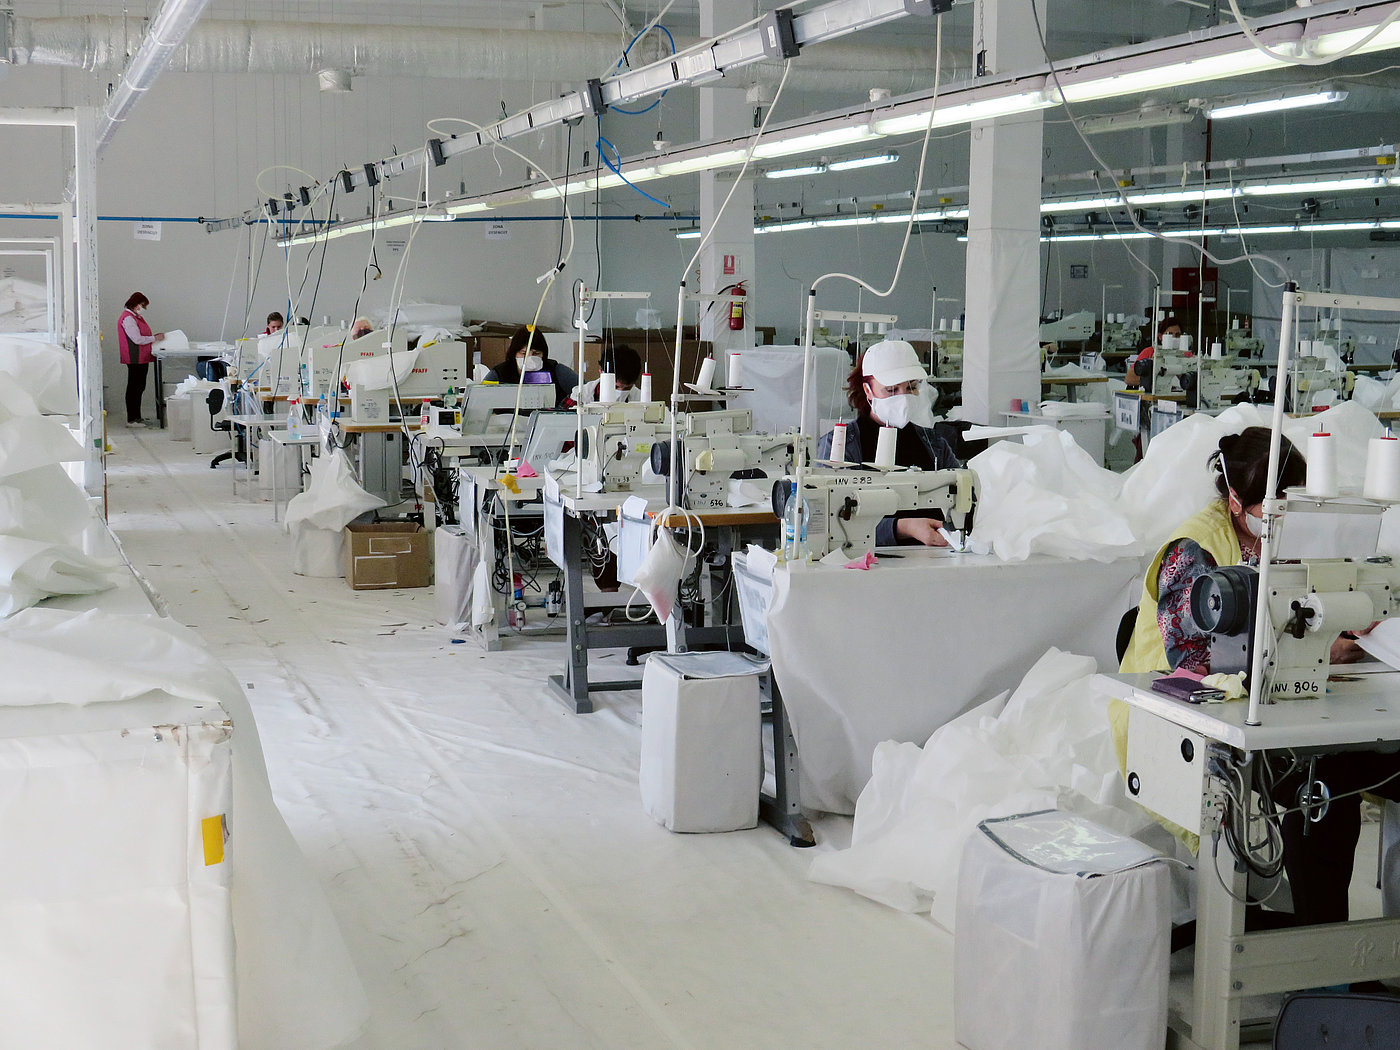 Foto: In einer großen Halle sitzen Personen hinter Industrienähmaschinen. Sie nähen mit weißem Garn ein weißes Gewebe.